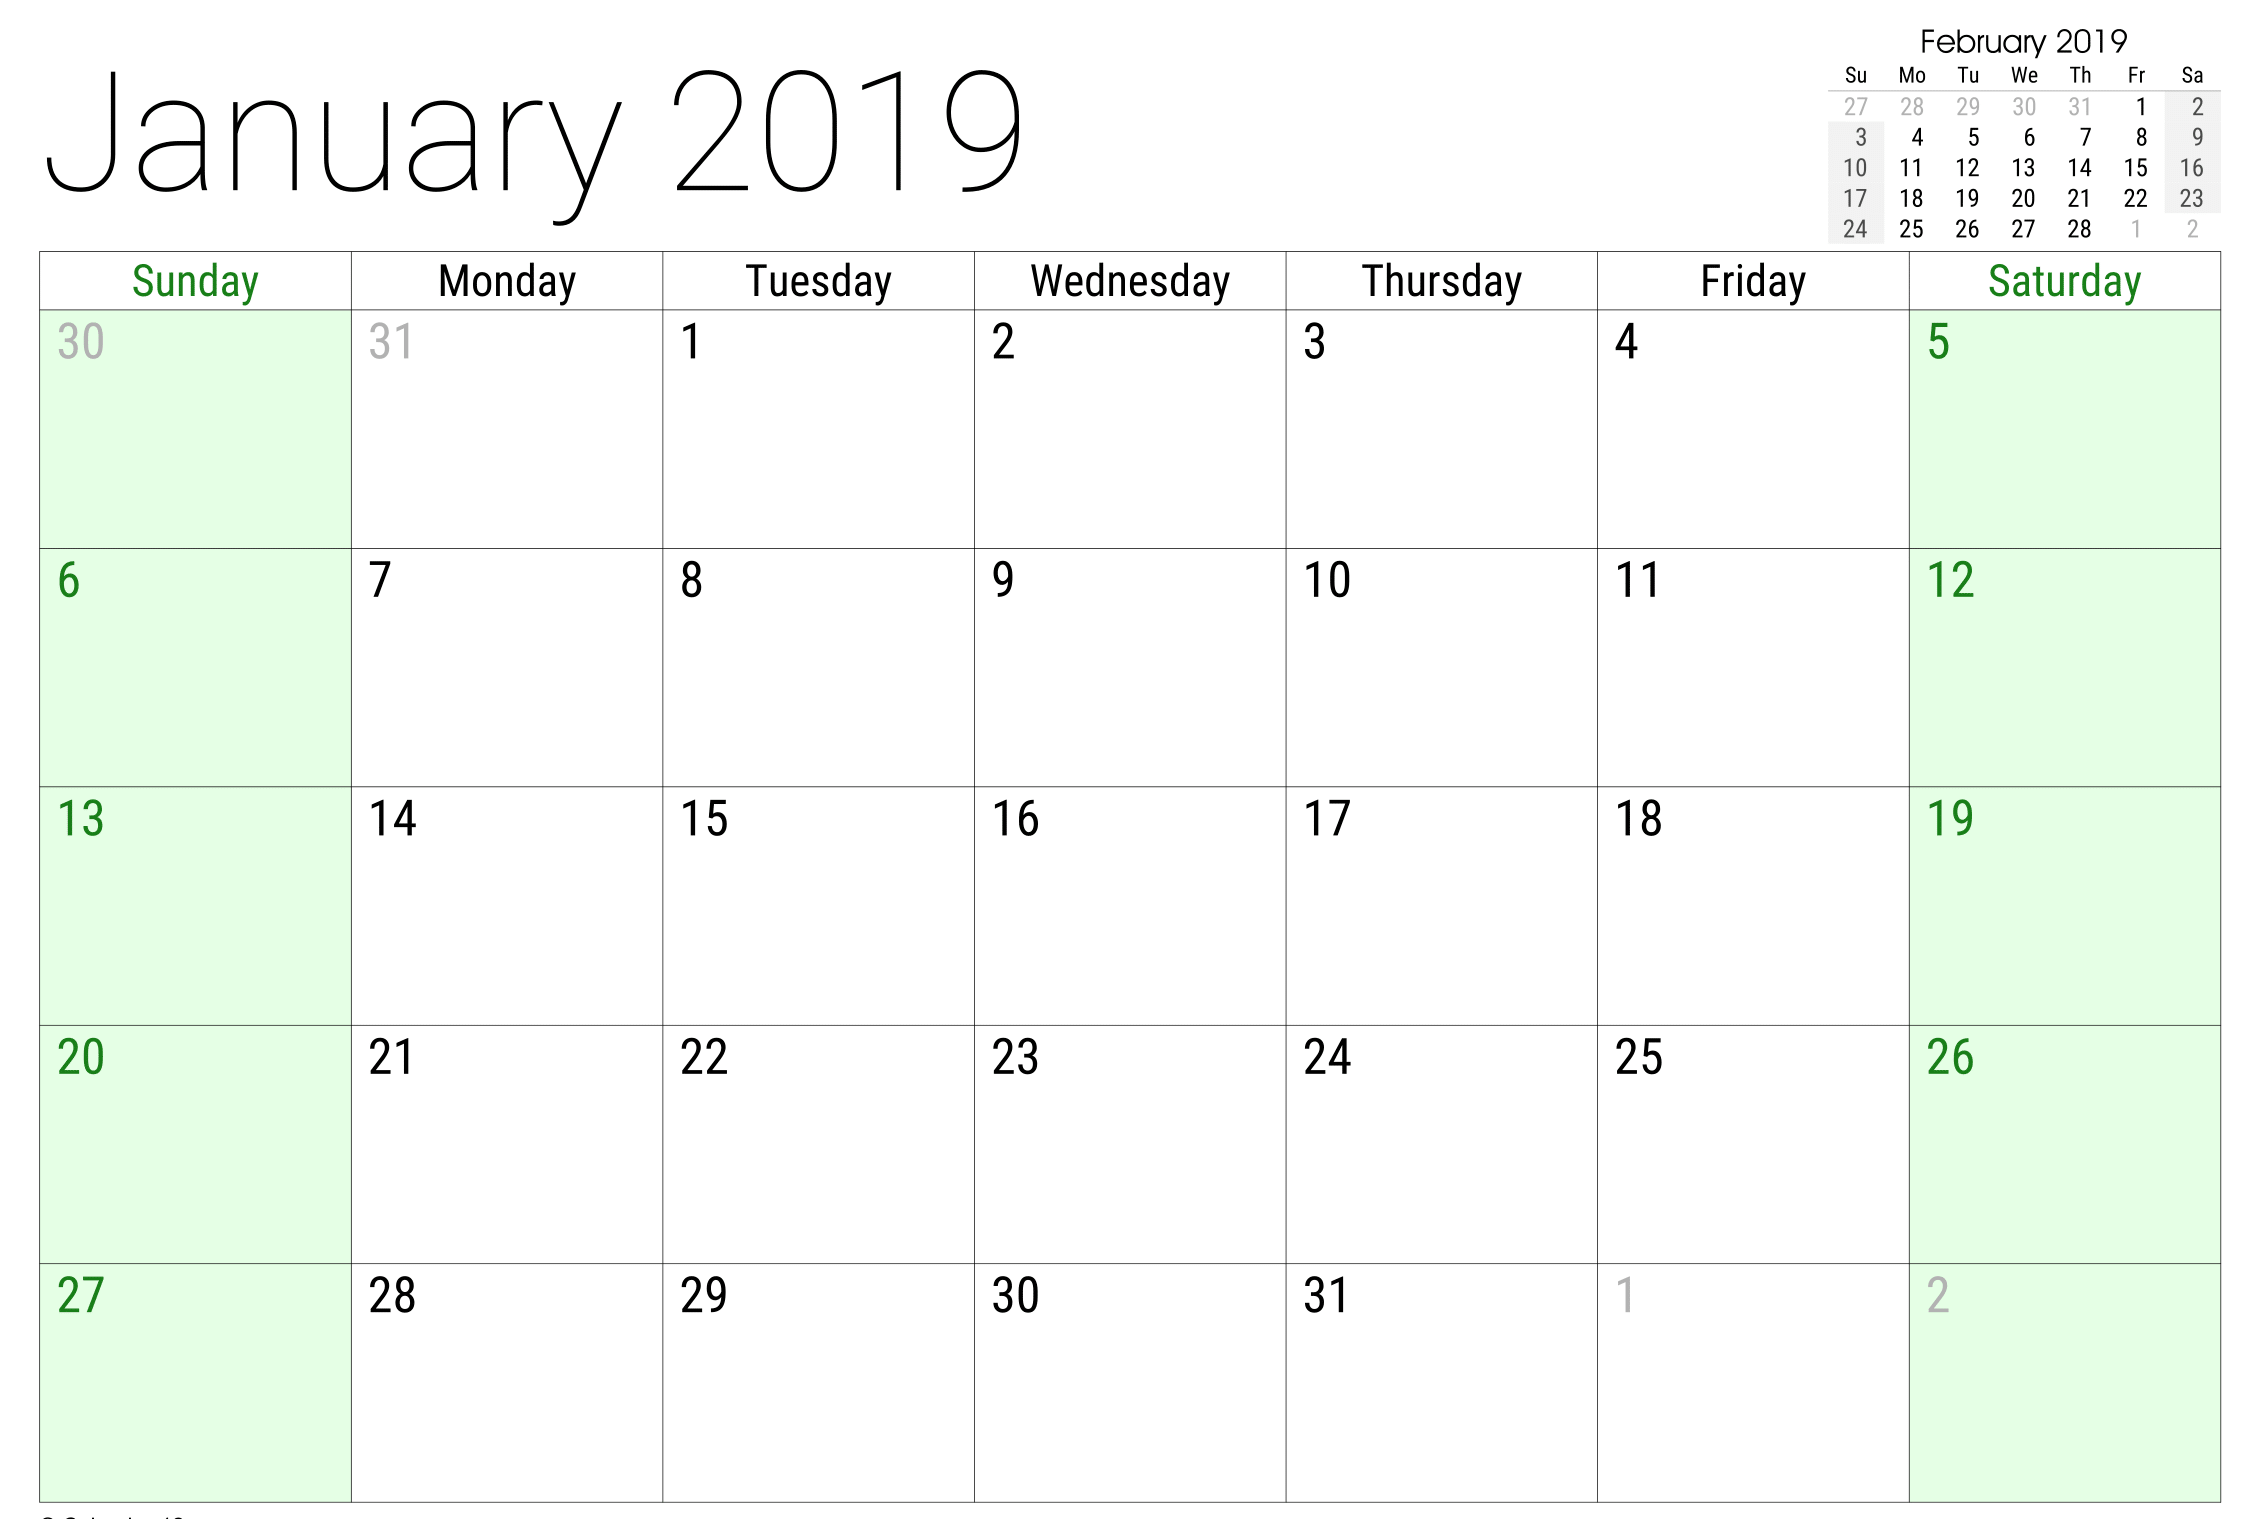 January 2019 Google Sheet Calendar 2019 Calendar Calendar Monthly